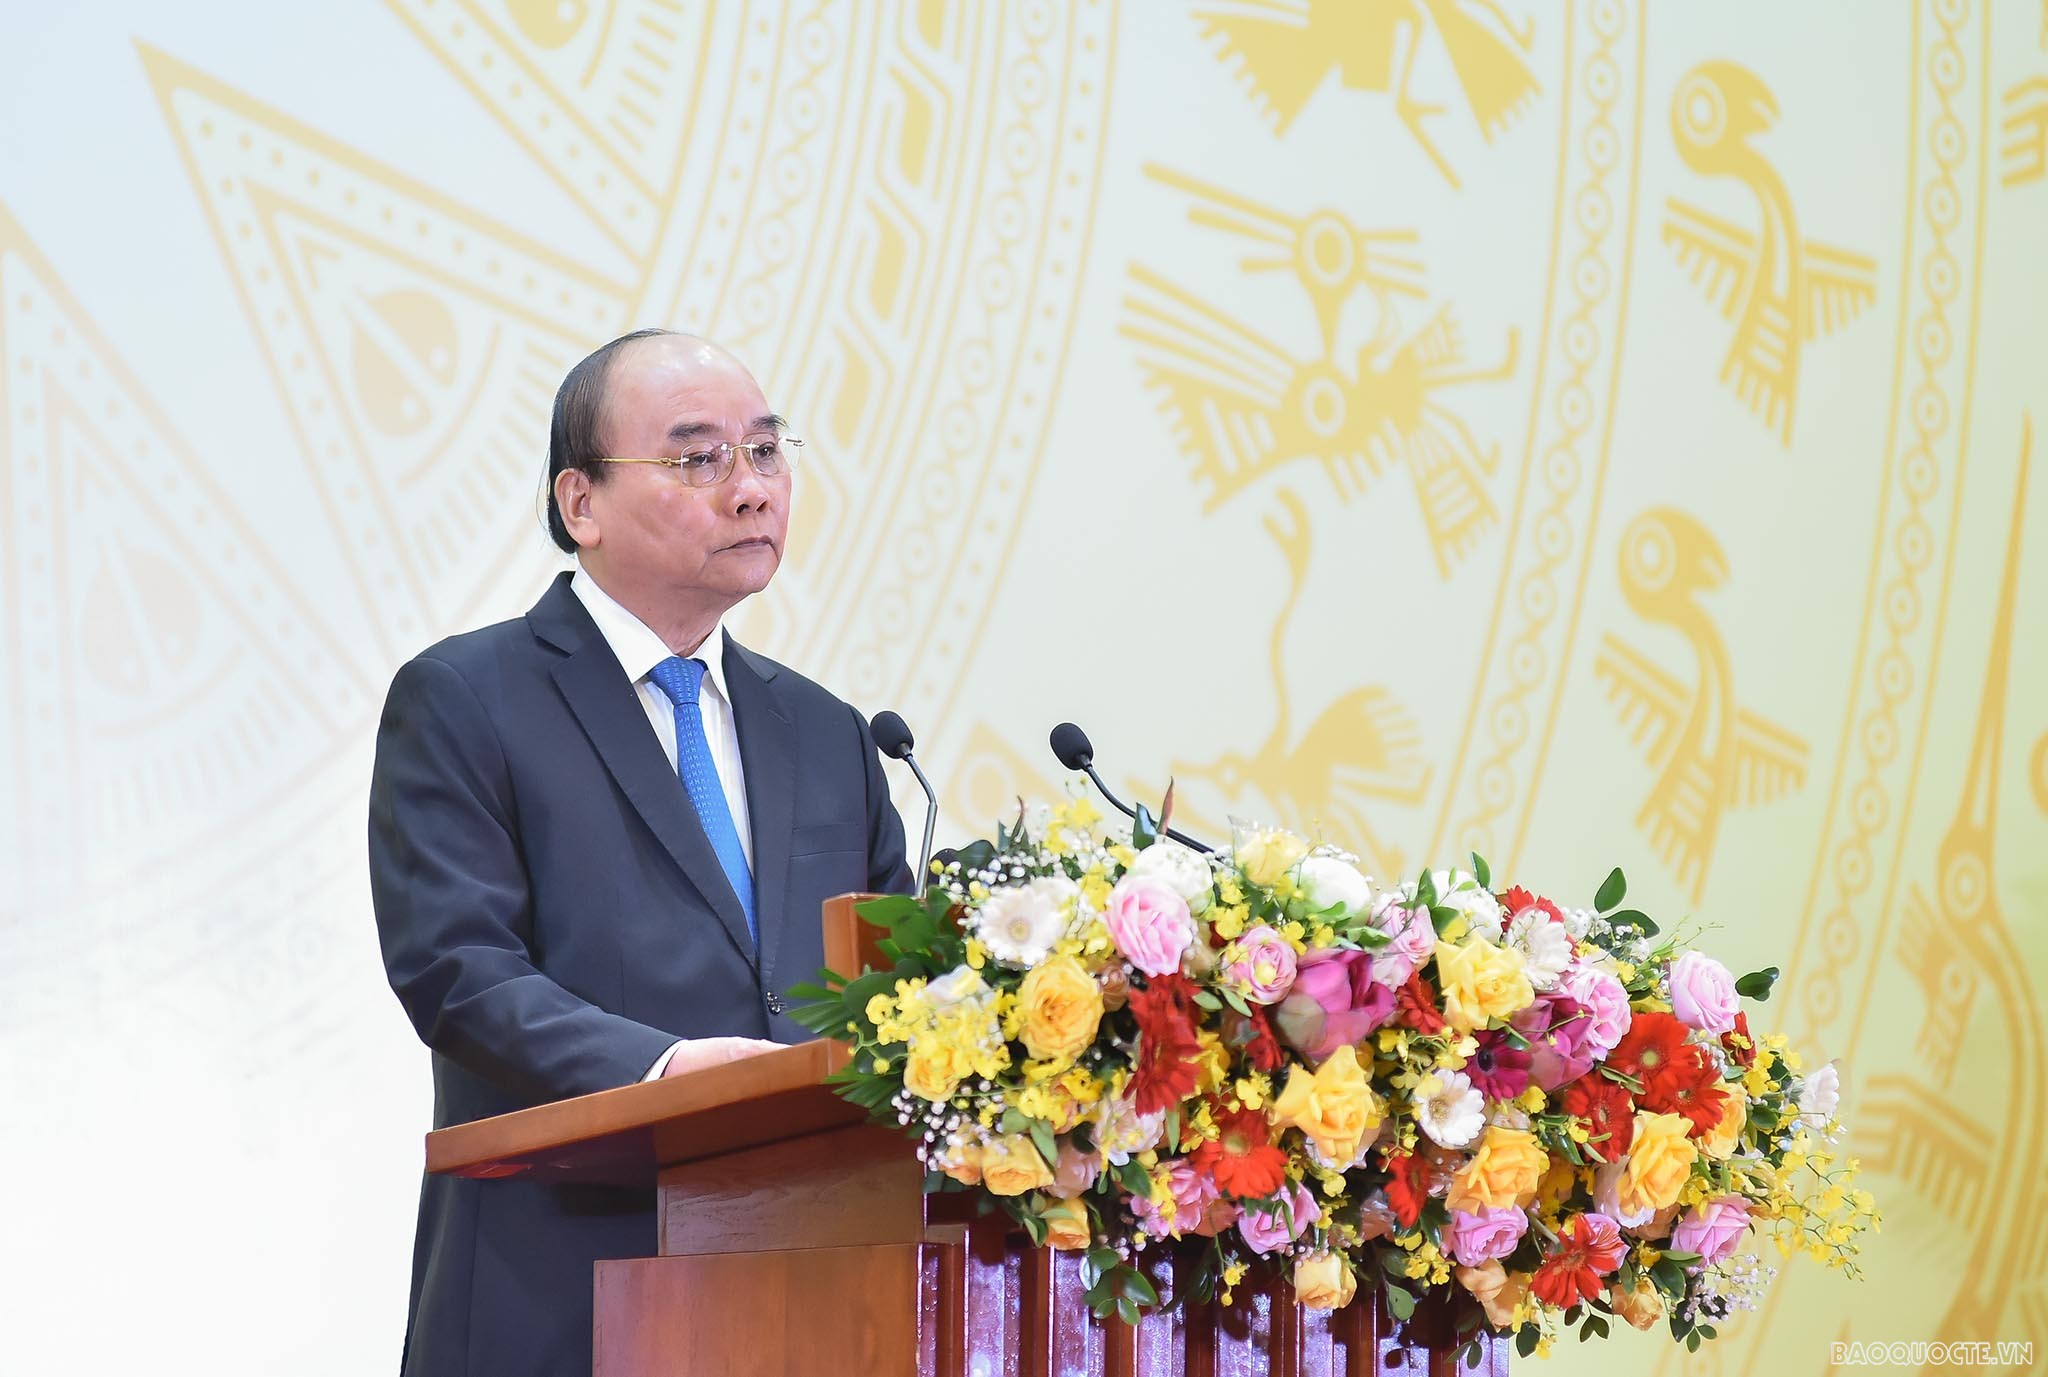 Toàn văn bài phát biểu của Chủ tịch nước Nguyễn Xuân Phúc tại Chiêu đãi Đoàn Ngoại giao nhân kỷ niệm 77 năm Quốc khánh